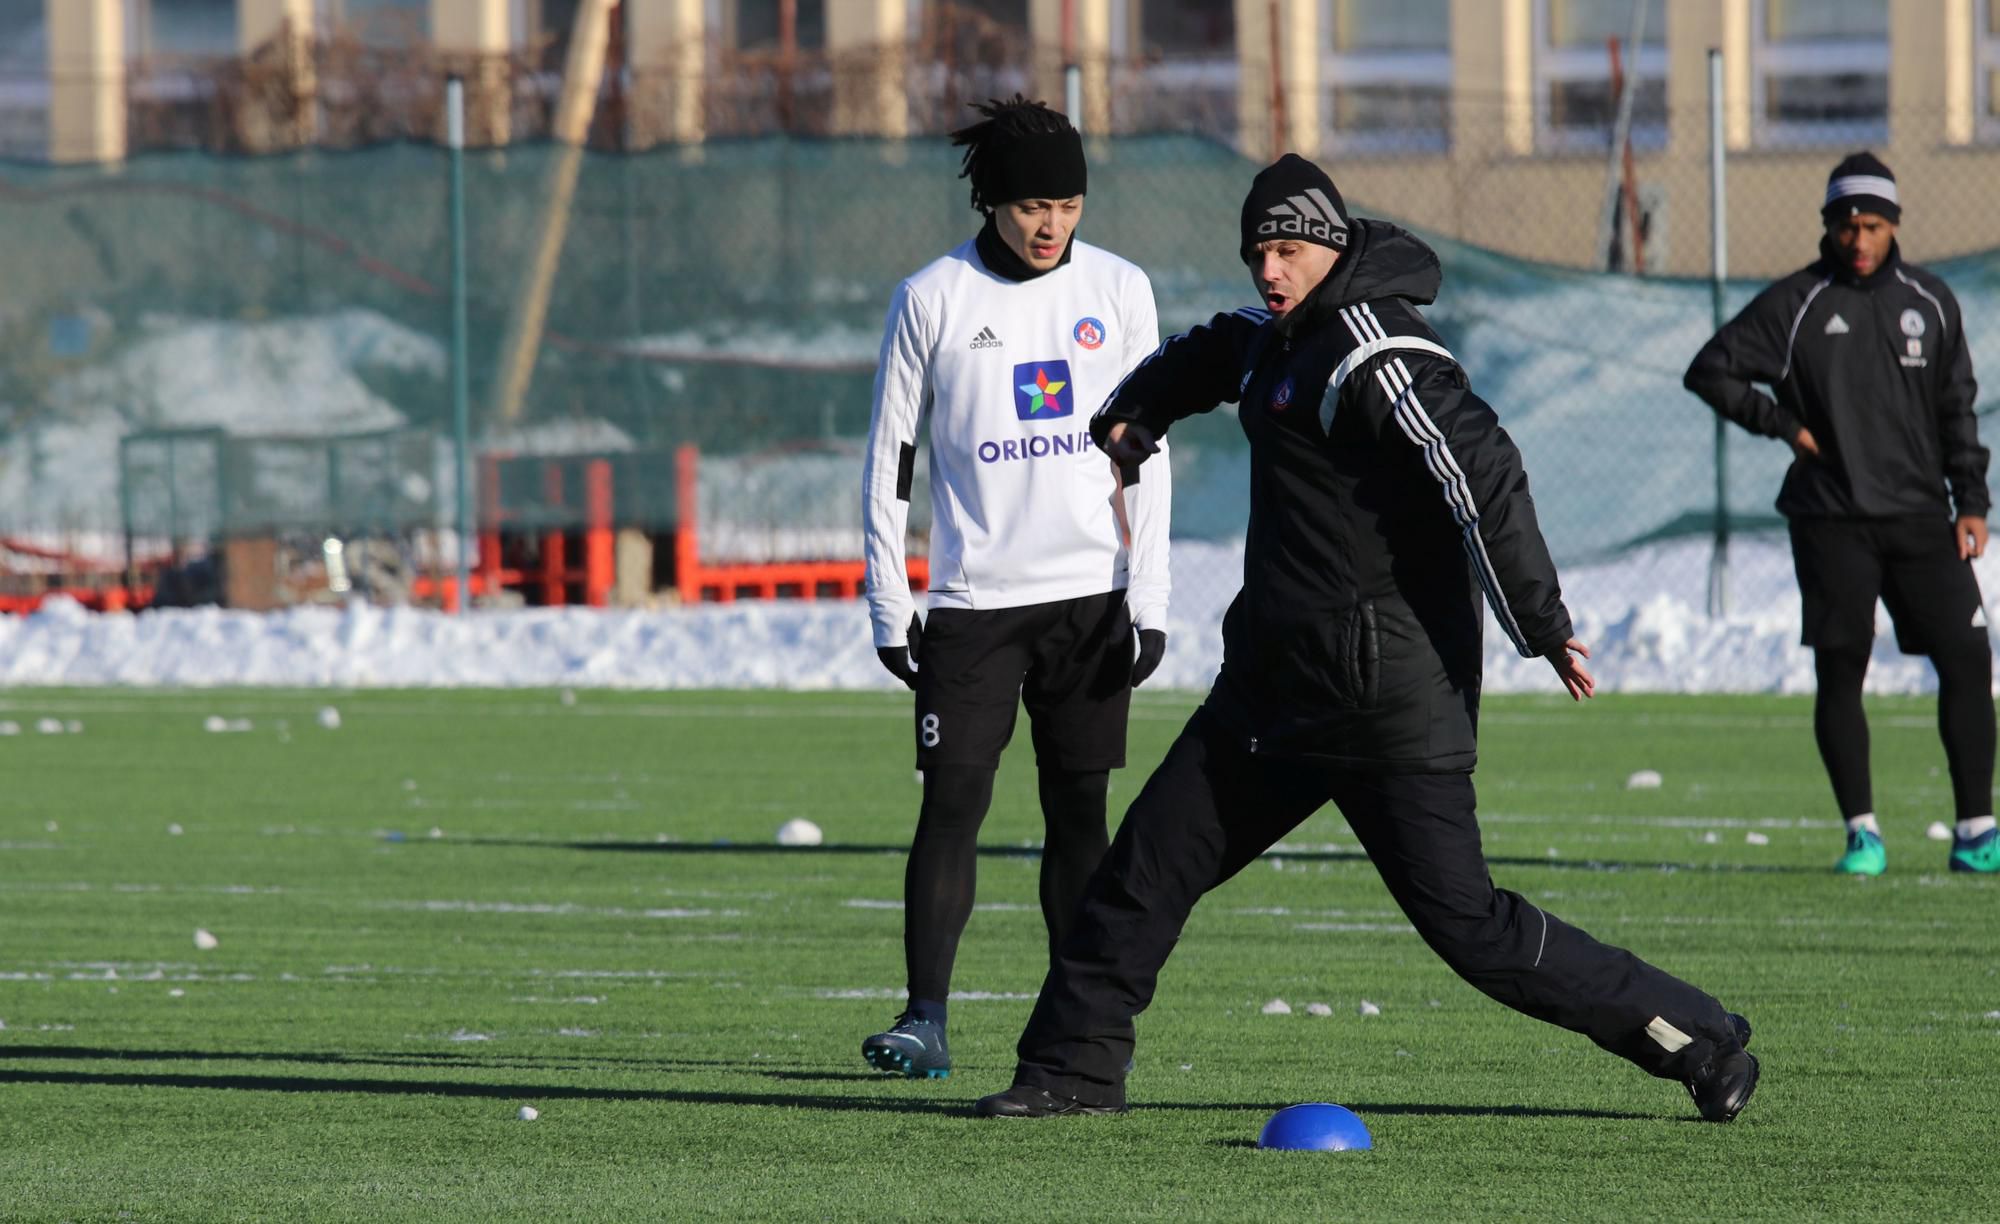 Zimnú prípravu s A-tímom trénera Vladimíra Cifraniča začali aj traja novici z krajín Beneluxu - Belgičan Andy Kawaya, Holanďania Alvin Fortes a Jeffrey Neral.